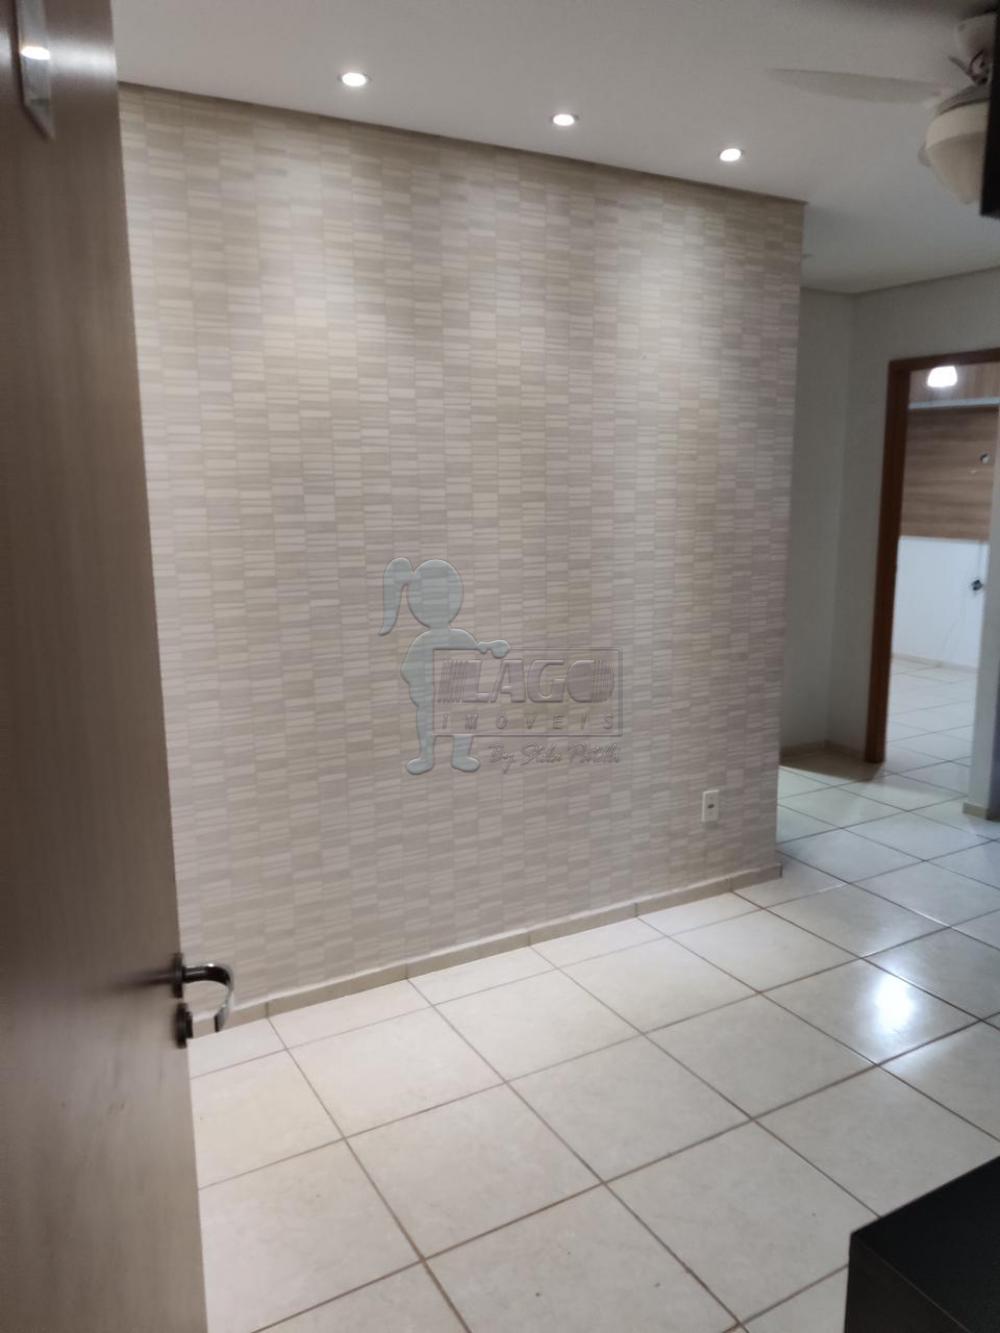 Alugar Apartamento / Padrão em Ribeirão Preto R$ 950,00 - Foto 1